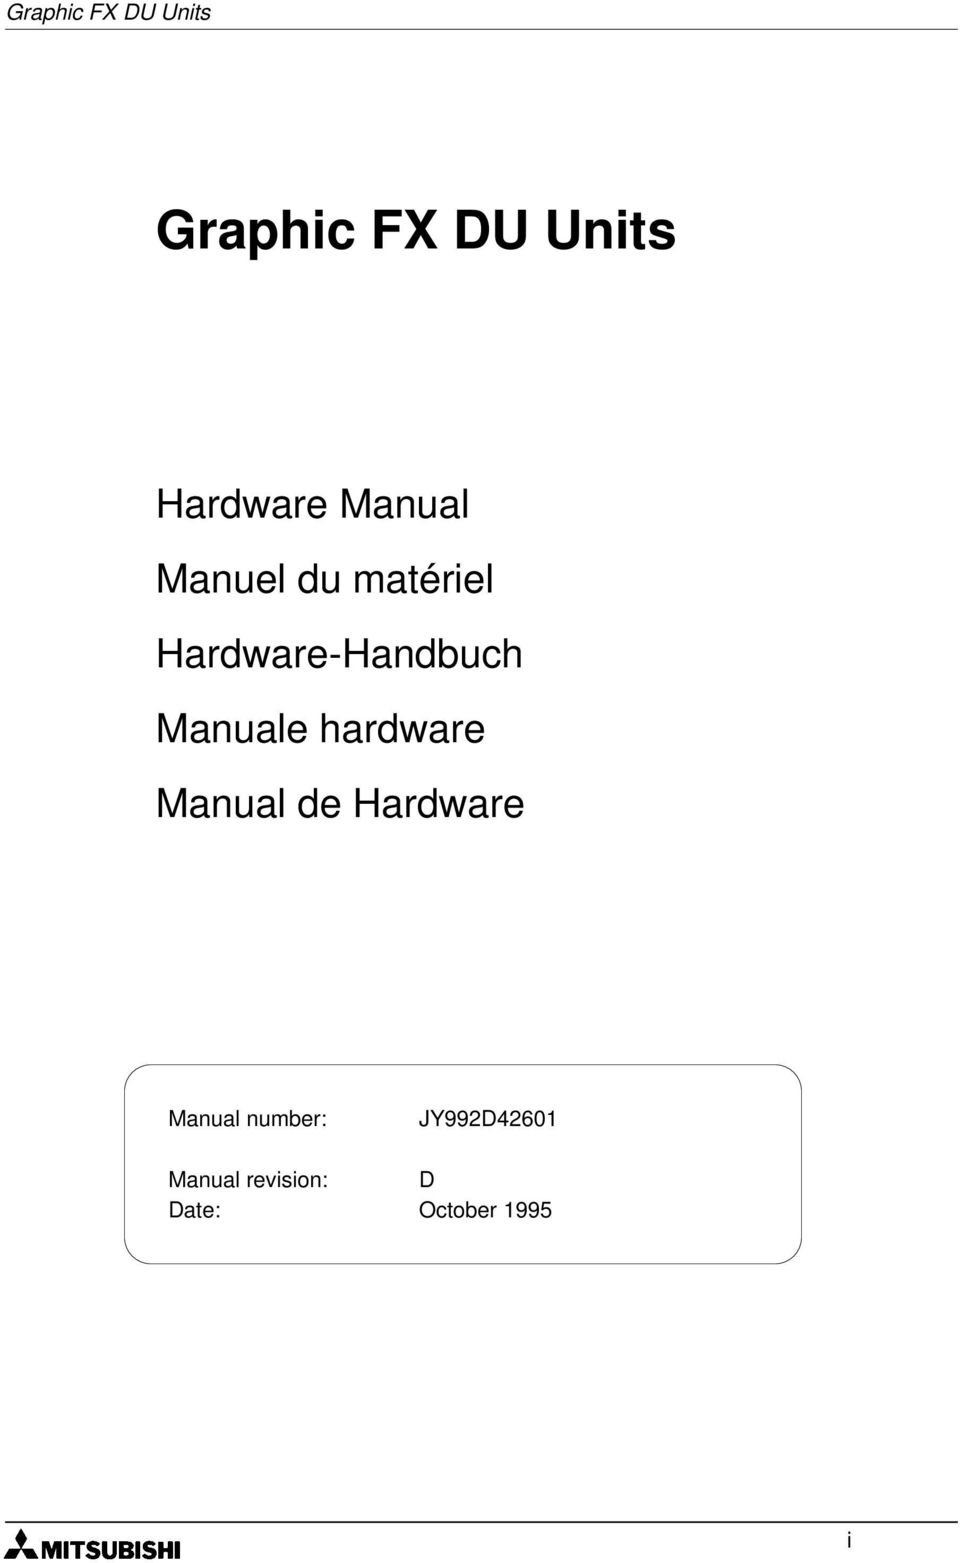 Manuale hardware Manual de Hardware Manual